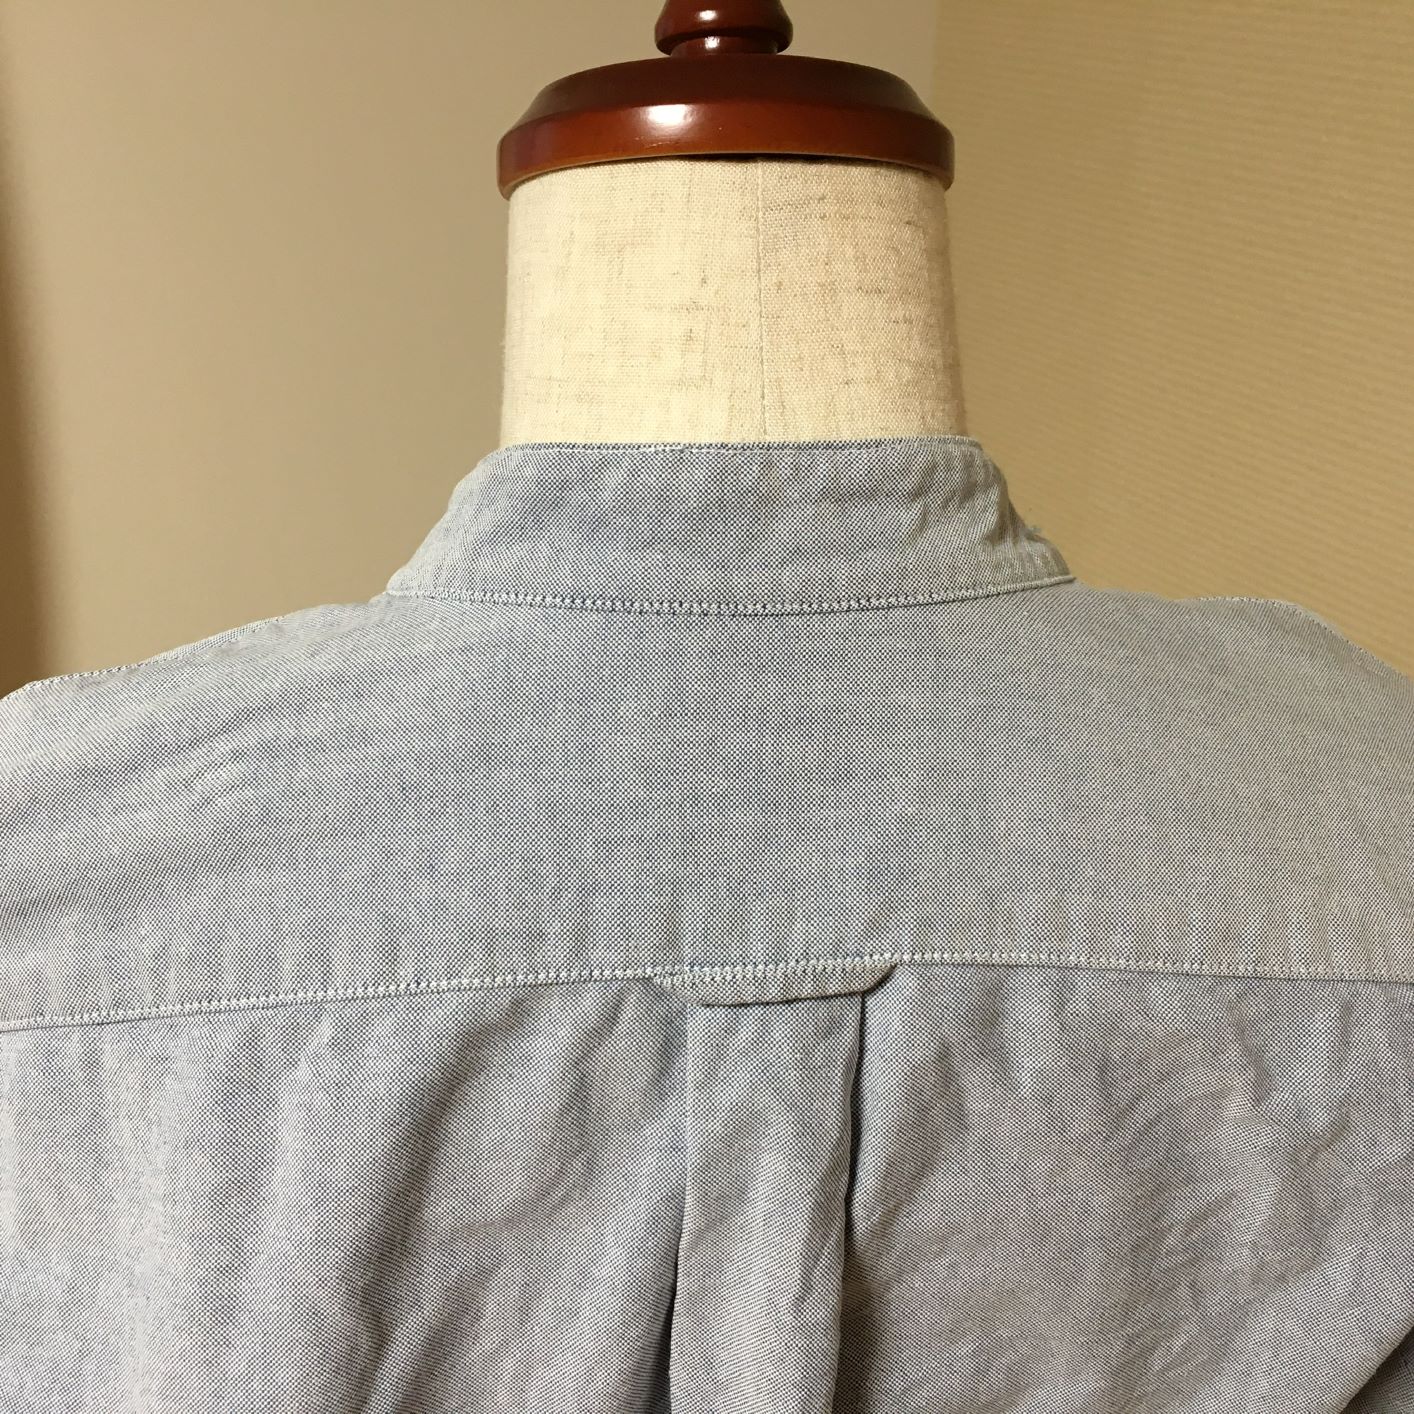 ほつれたシャツの襟を補修(ミシン初心者でも出来る2通りの補修方法) | 自作自錯自咲